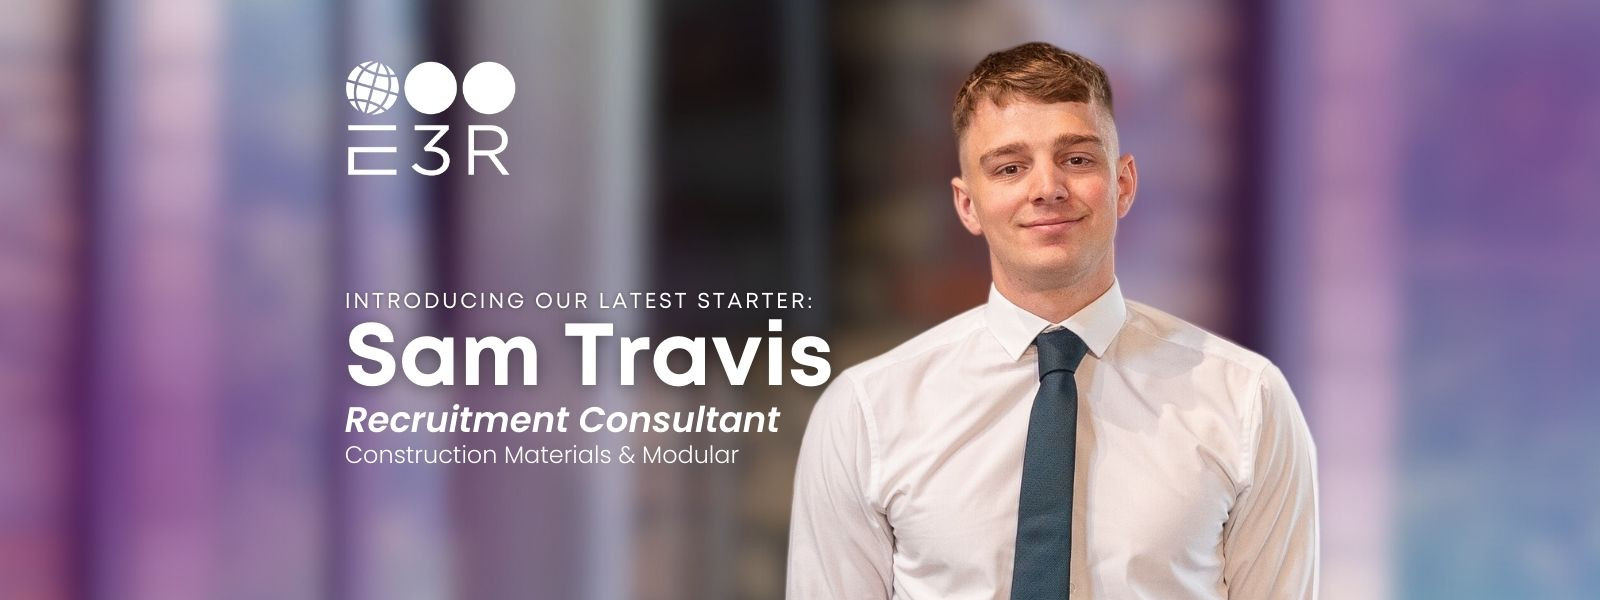 Meet Sam Travis, Recruitment Consultant in our Con...